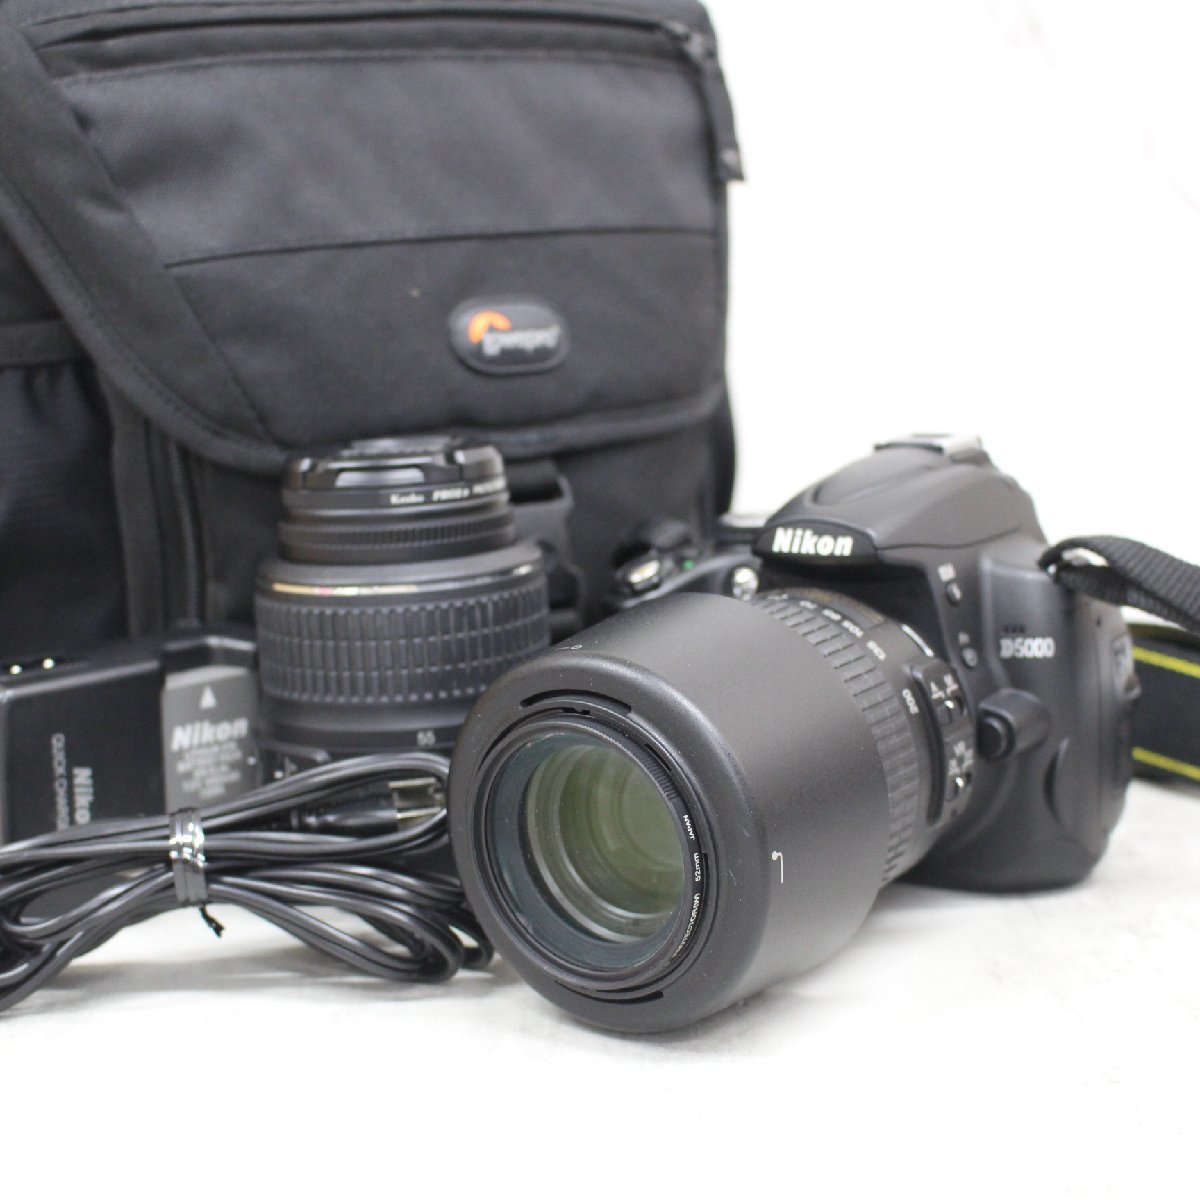 東京都渋谷区にて Nikon デジタル一眼レフカメラ D5000  を出張買取させて頂きました。